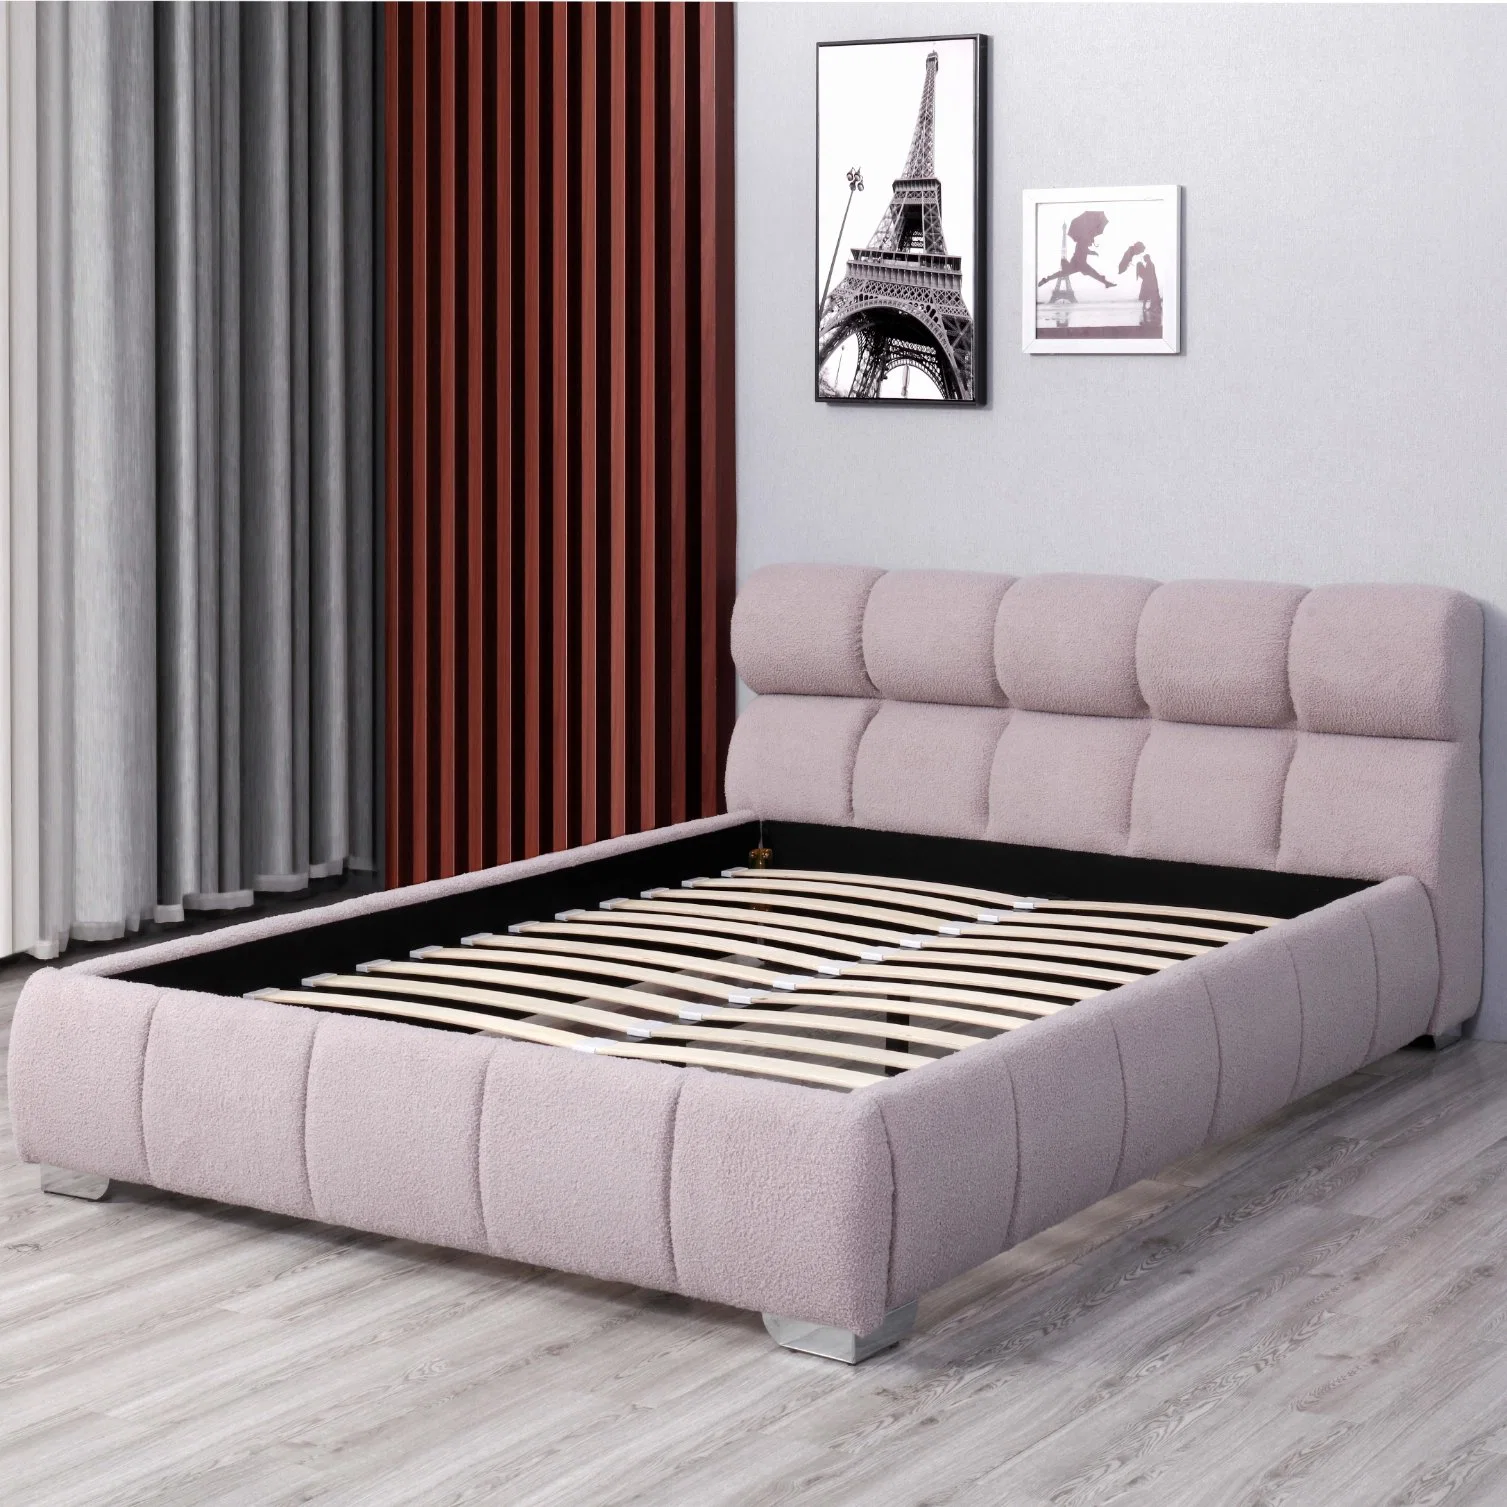 تصنيع هوايانغ سرير ملكي مخصص لغرفة نوم الملكة إطار سرير مزدوج حجم الملكة سرير مخملي أصلي.